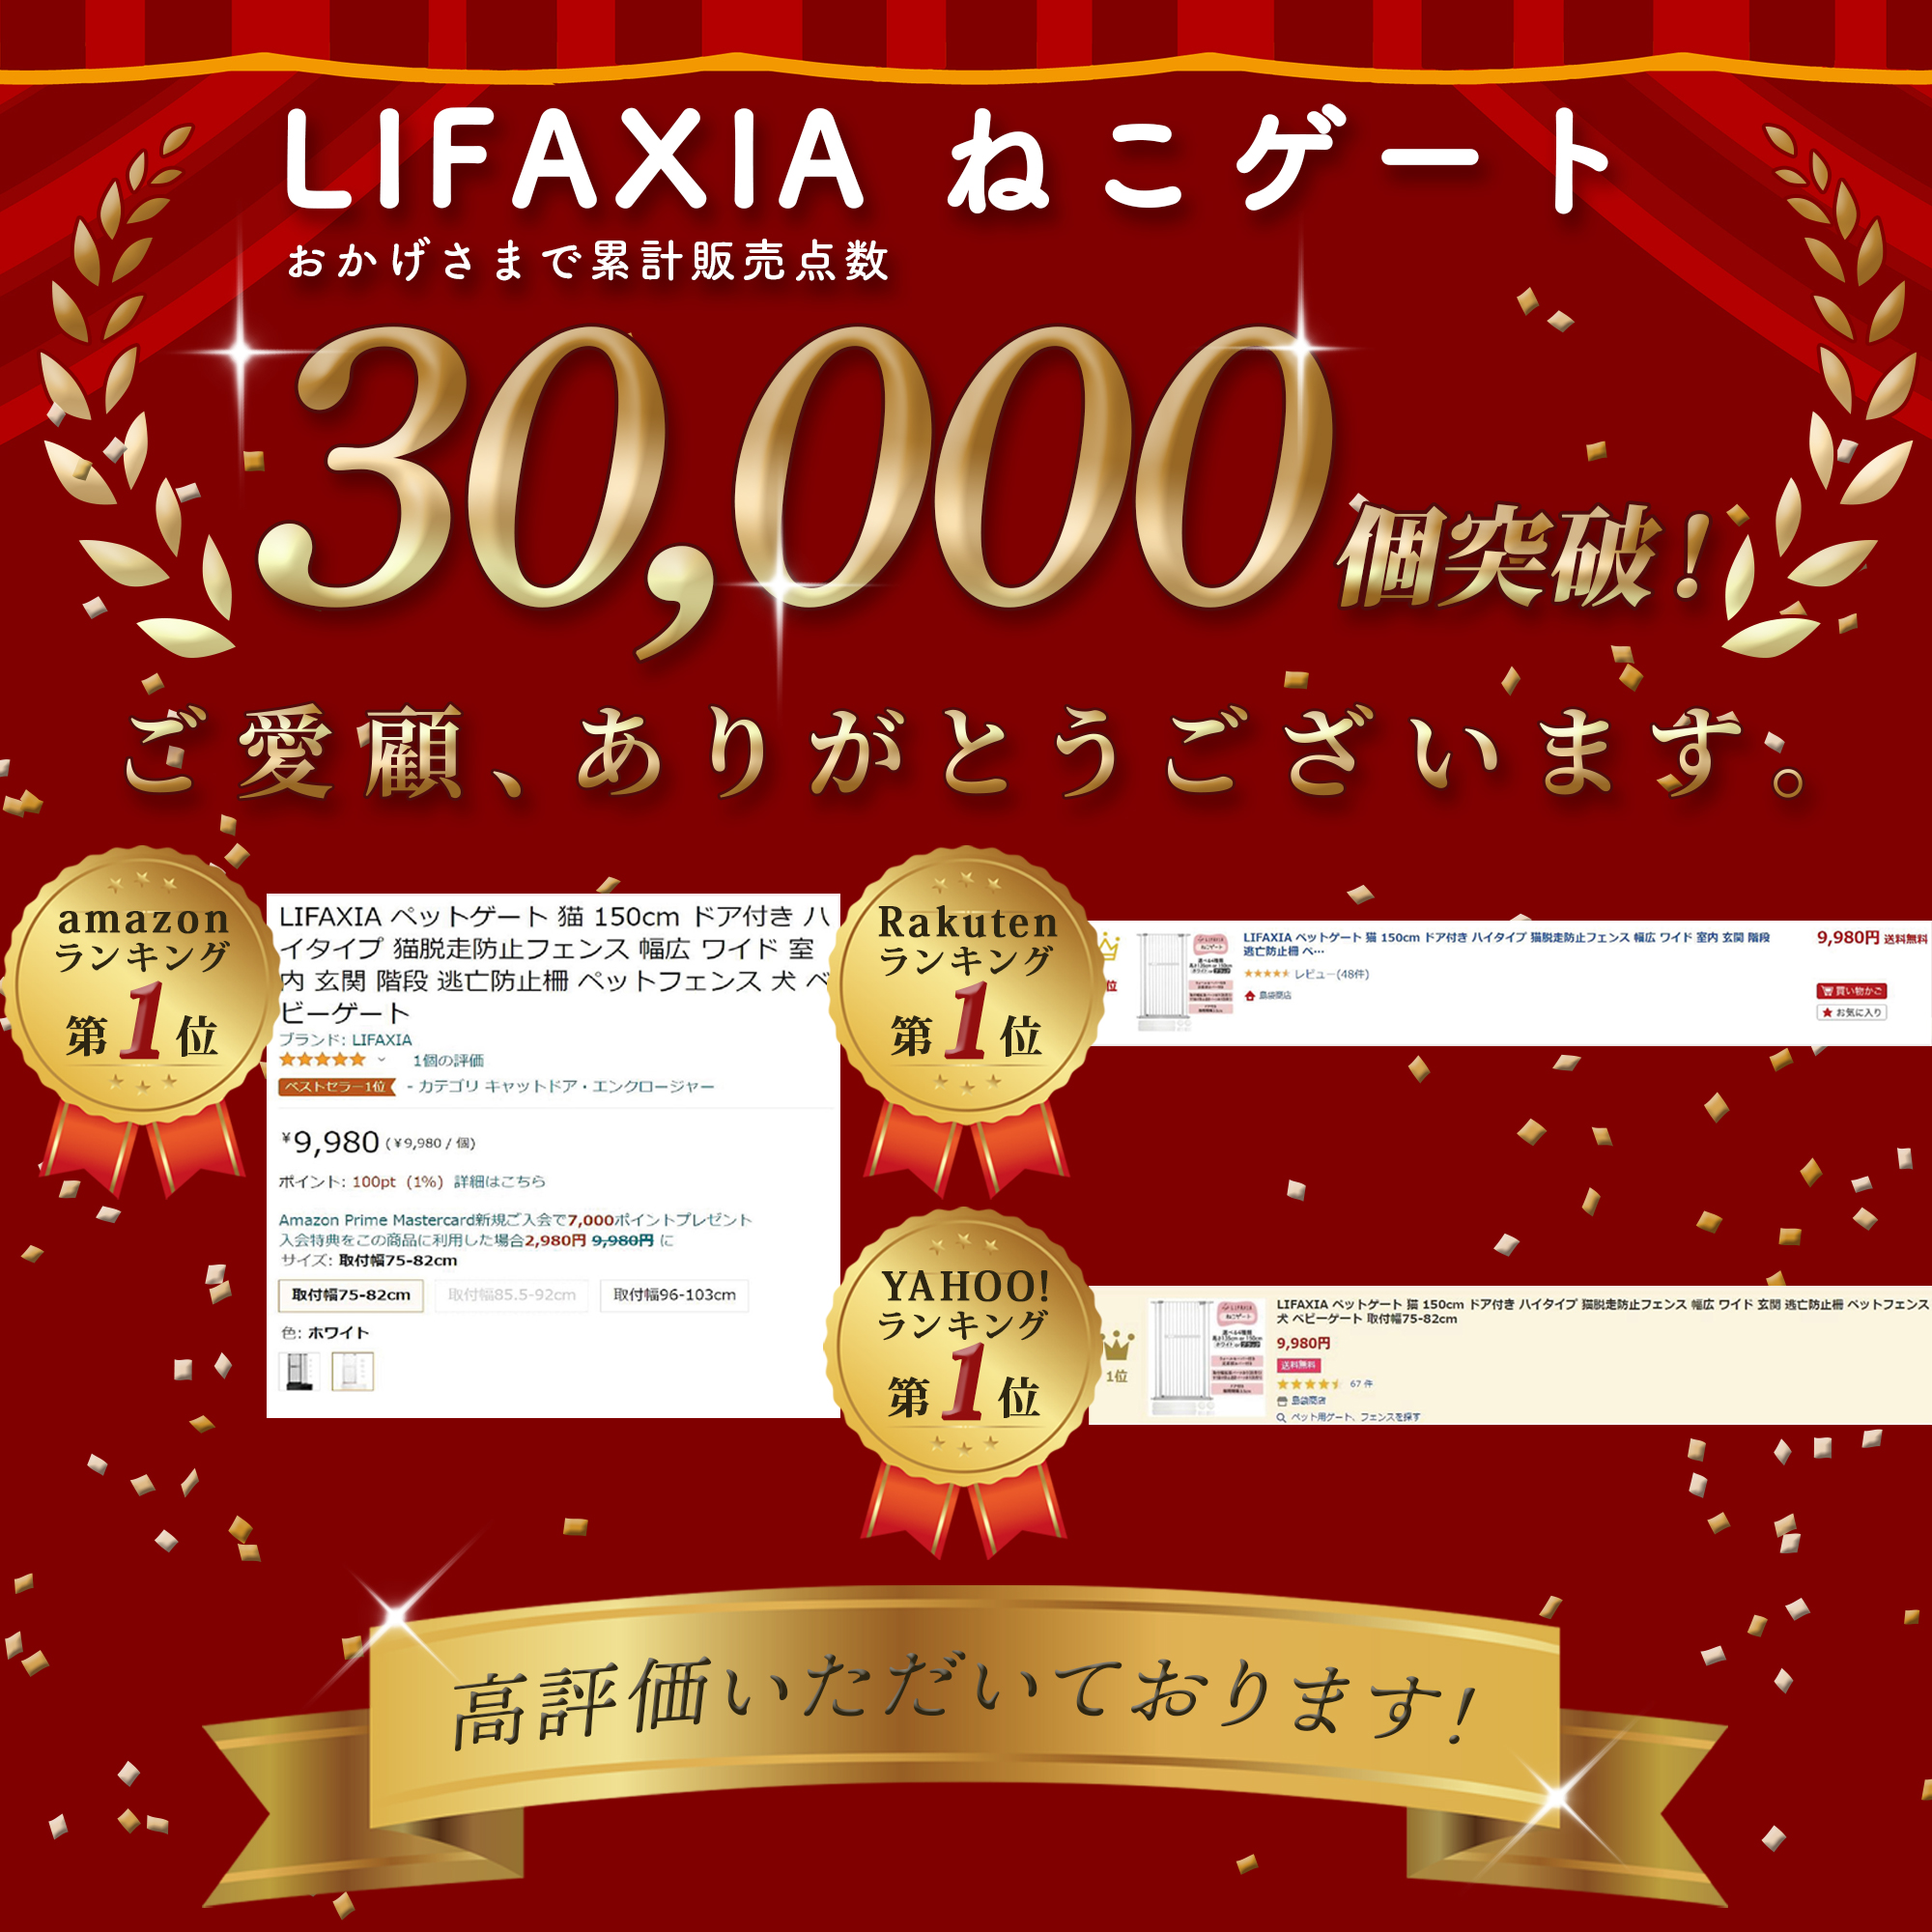 LIFAXIA ペットゲート 猫 150cm 島袋商店 【スライド式ペットゲート150 